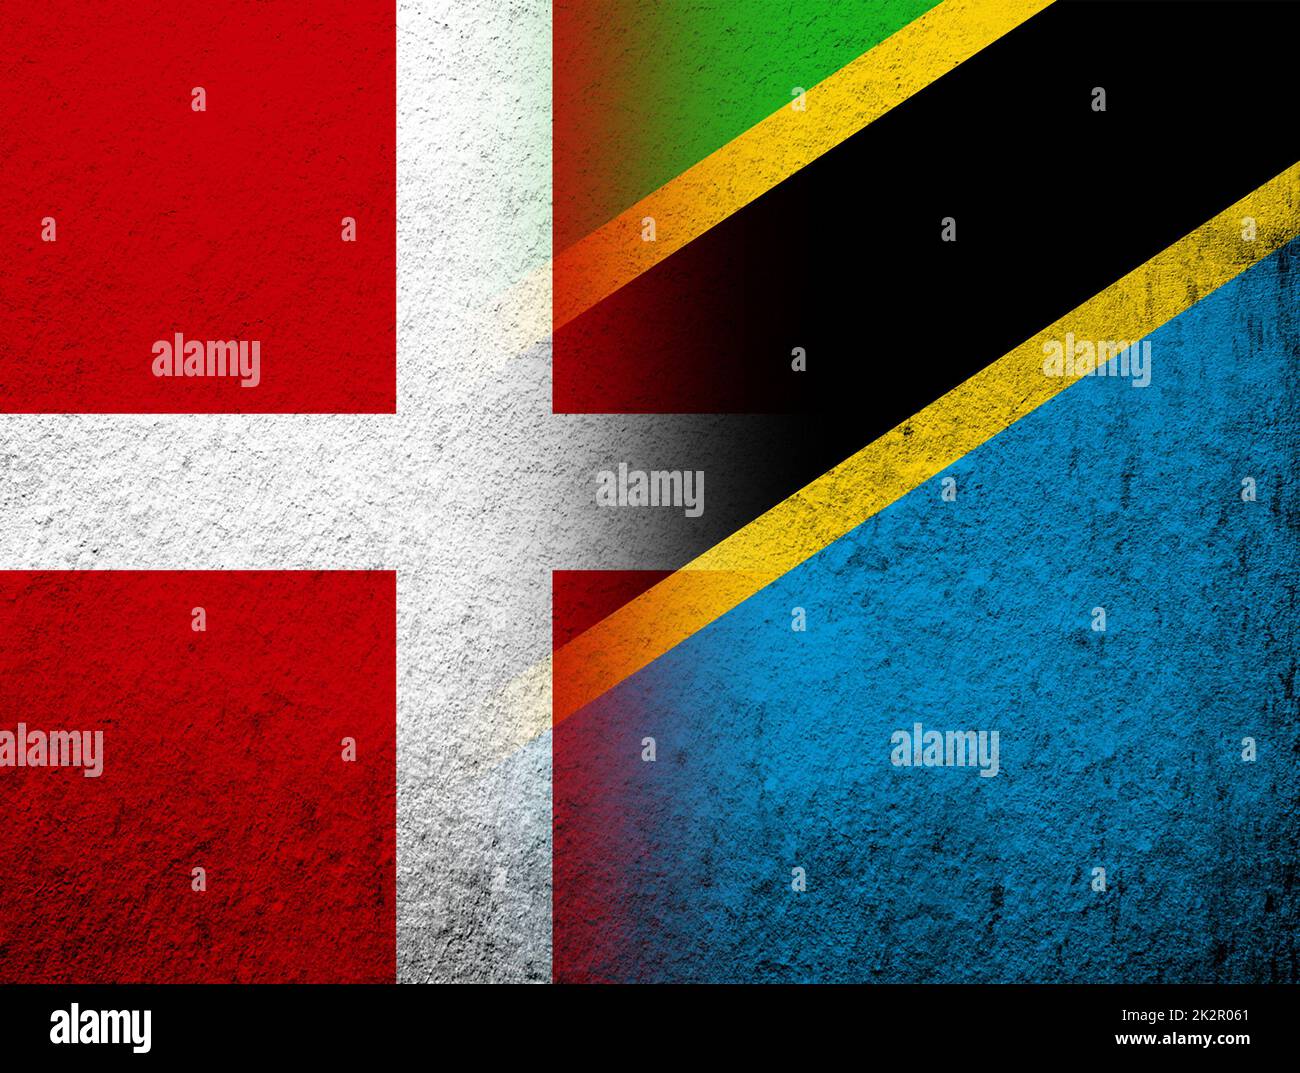 Das Königreich Dänemark Nationalflagge mit der Vereinigten Republik Tansania Nationalflagge. Grunge Hintergrund Stockfoto